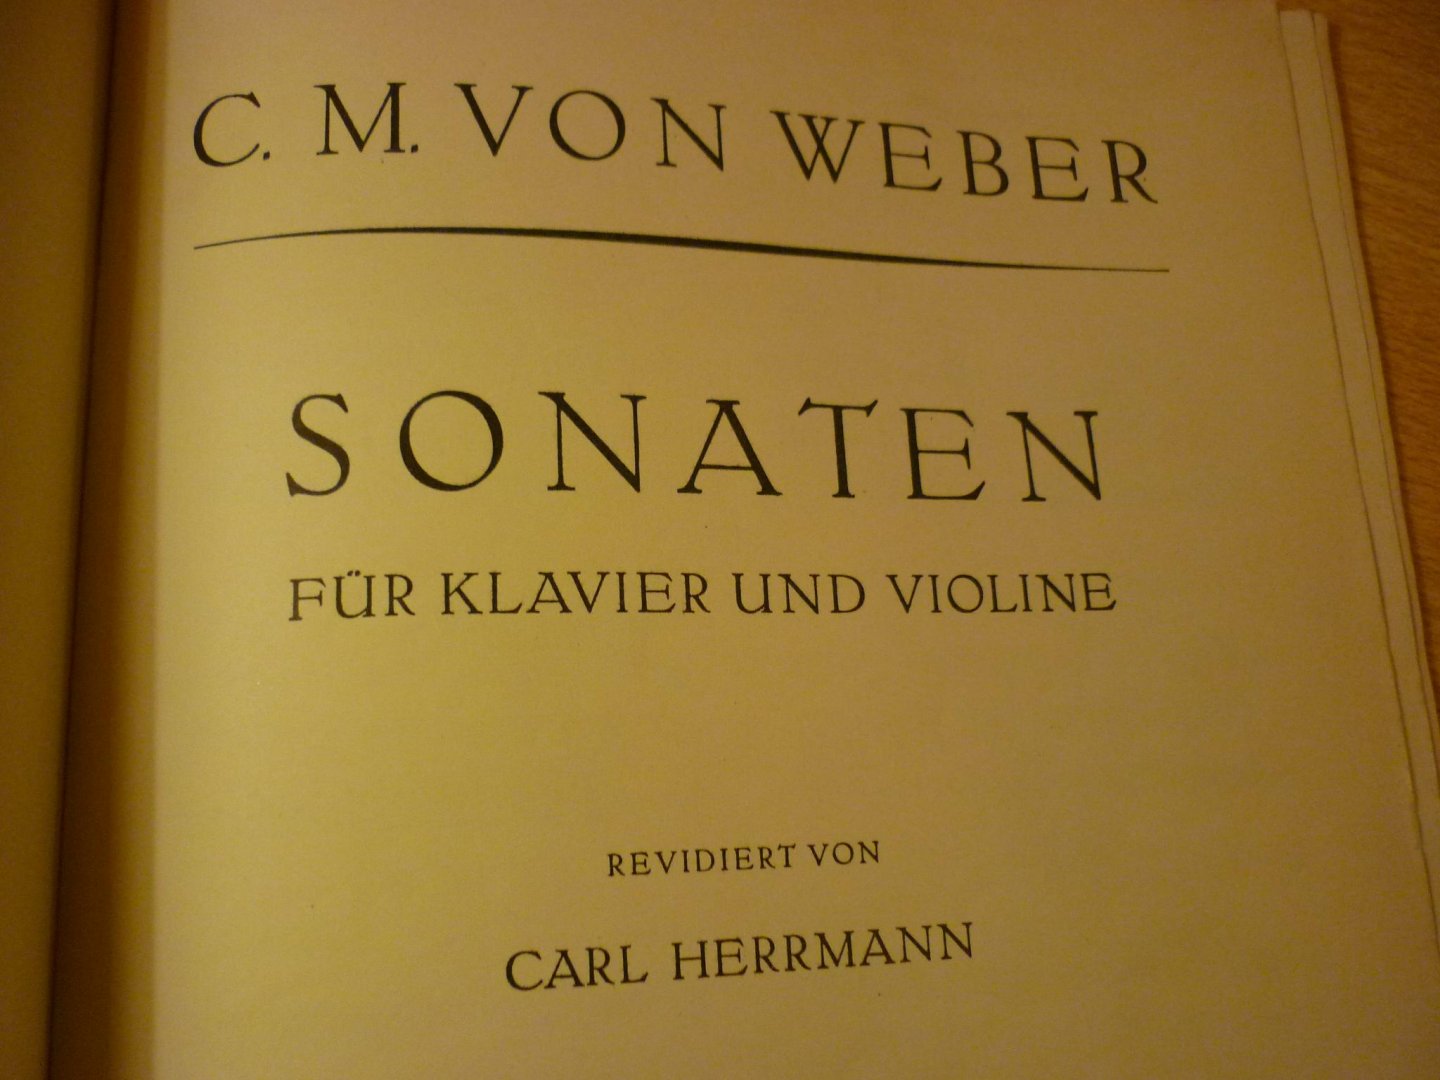 Weber; C.M. von - Sonaten für Violine und Klavier - sonate 1 t/m. 6; (Carl Herrmann)